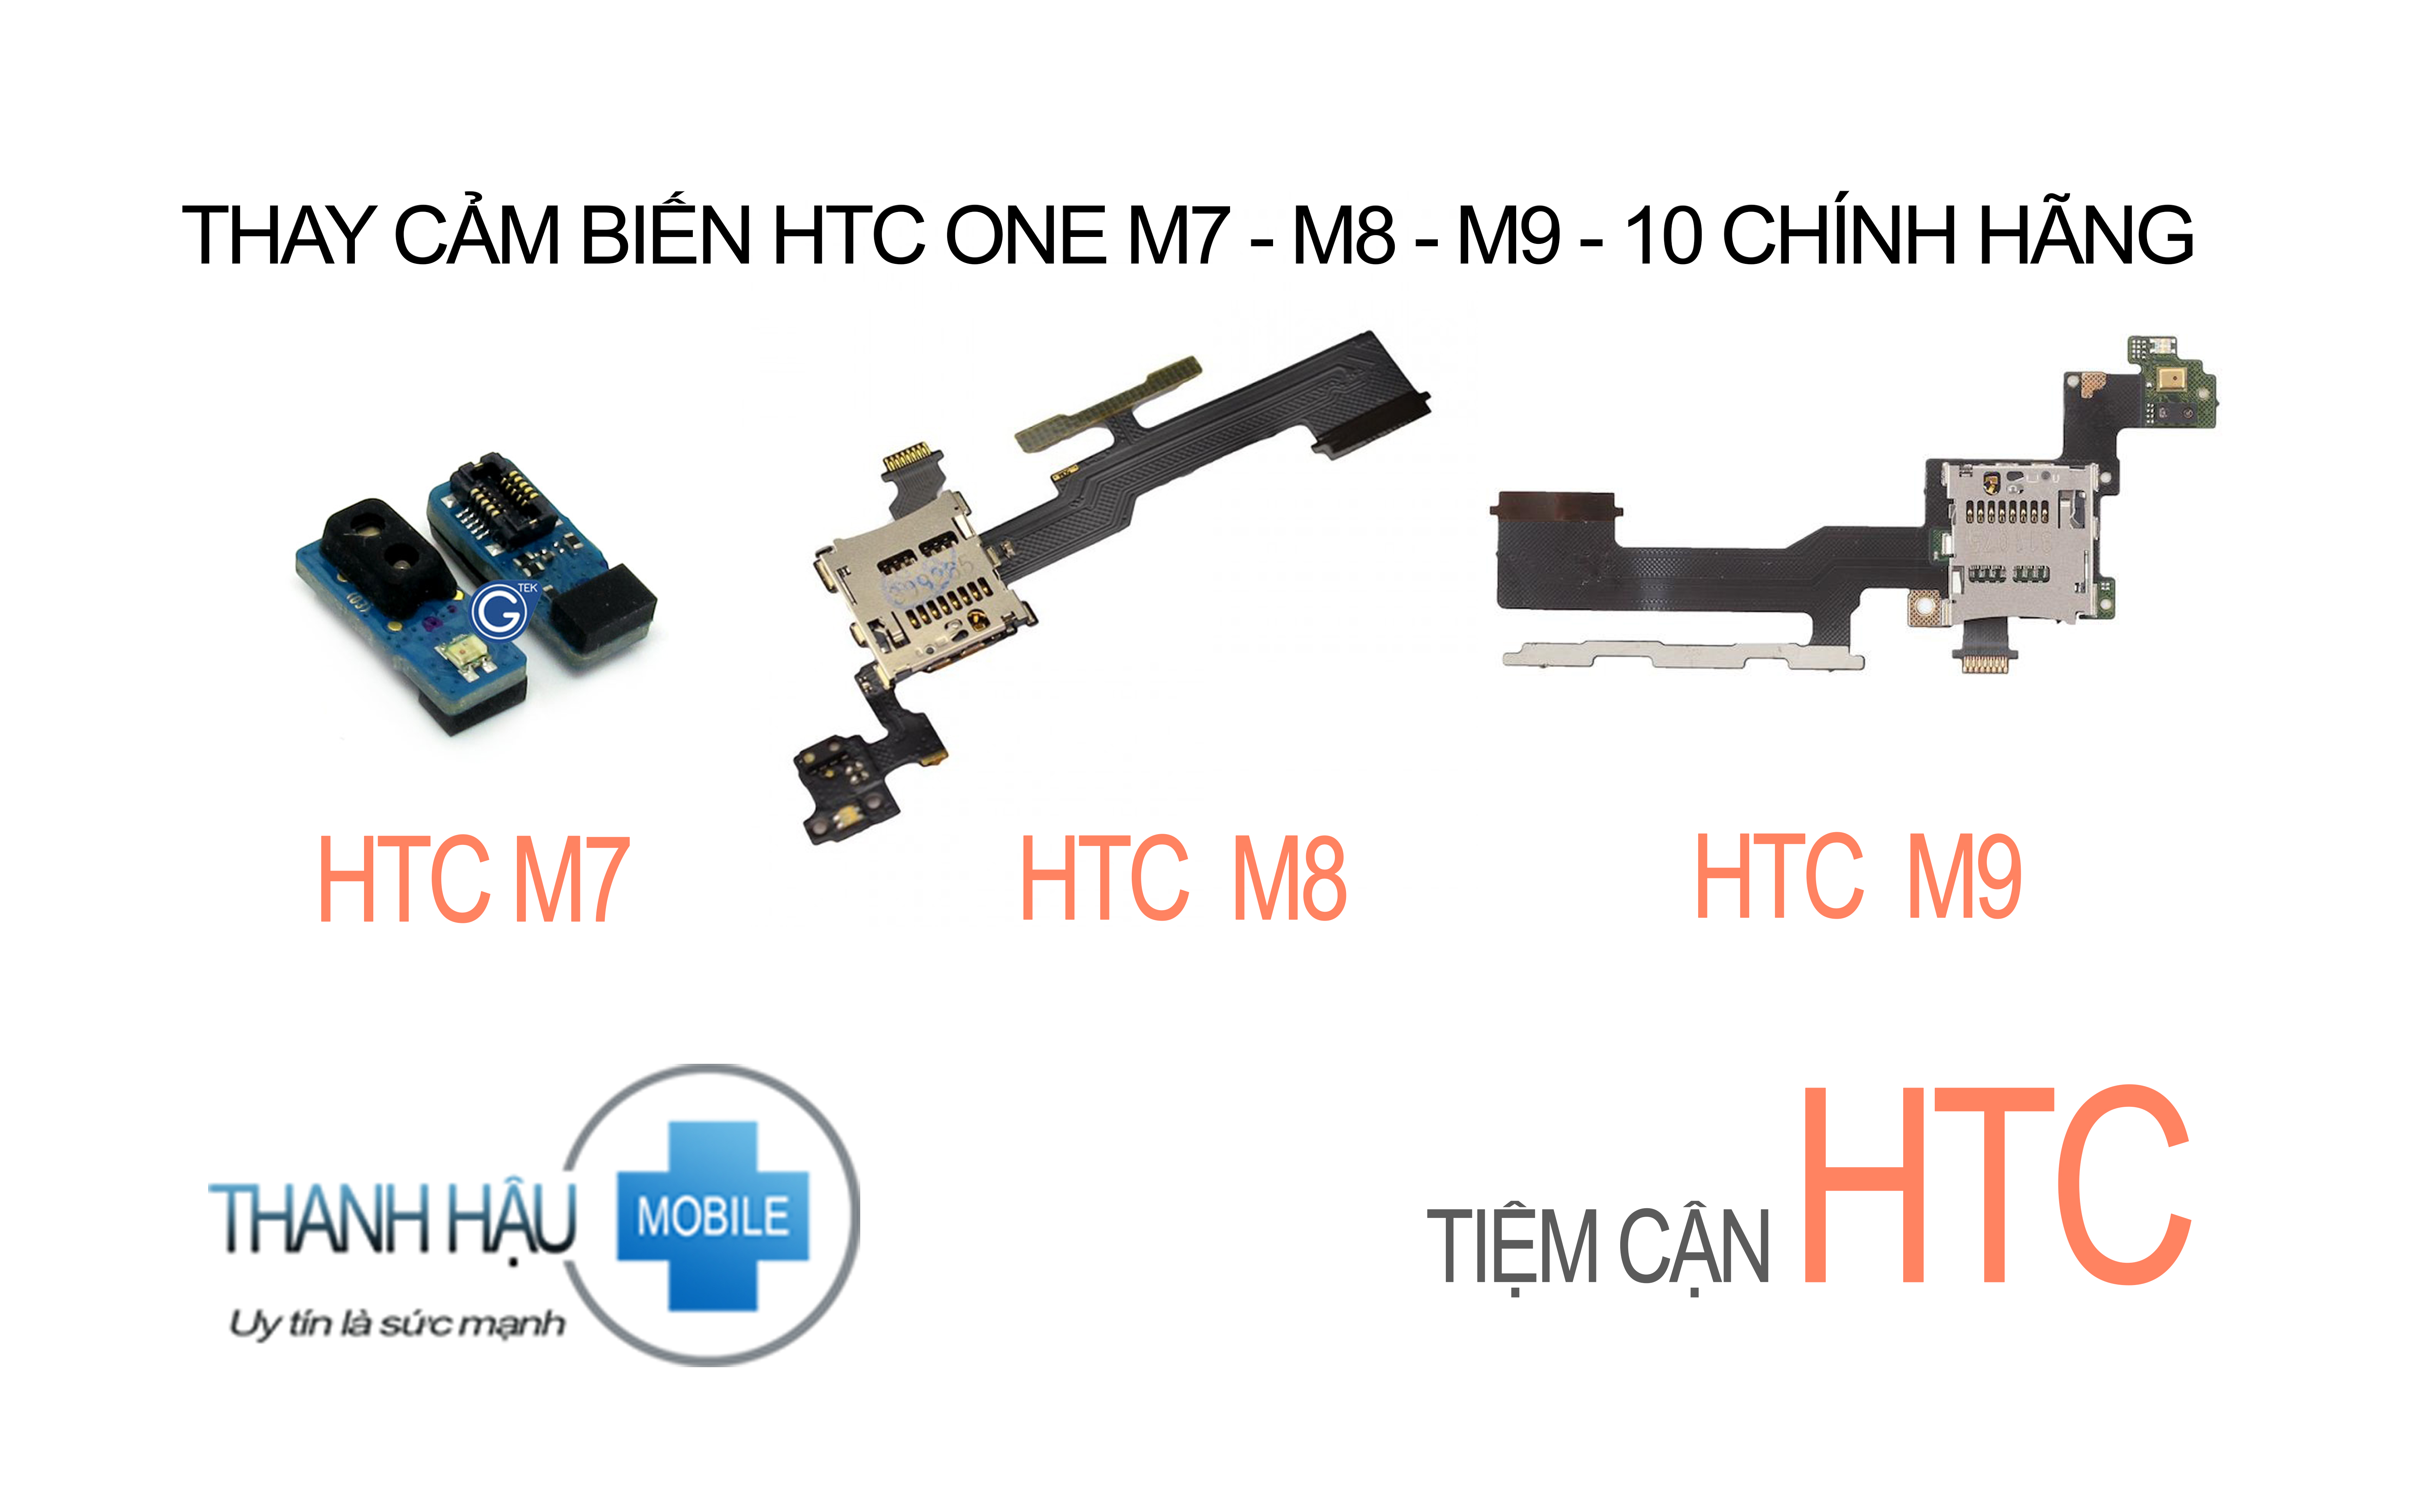 Thay / Sửa cảm biến sáng tối Htc One M7, m8, m9, 10 lấy ngay giá rẻ ở Hà Nội